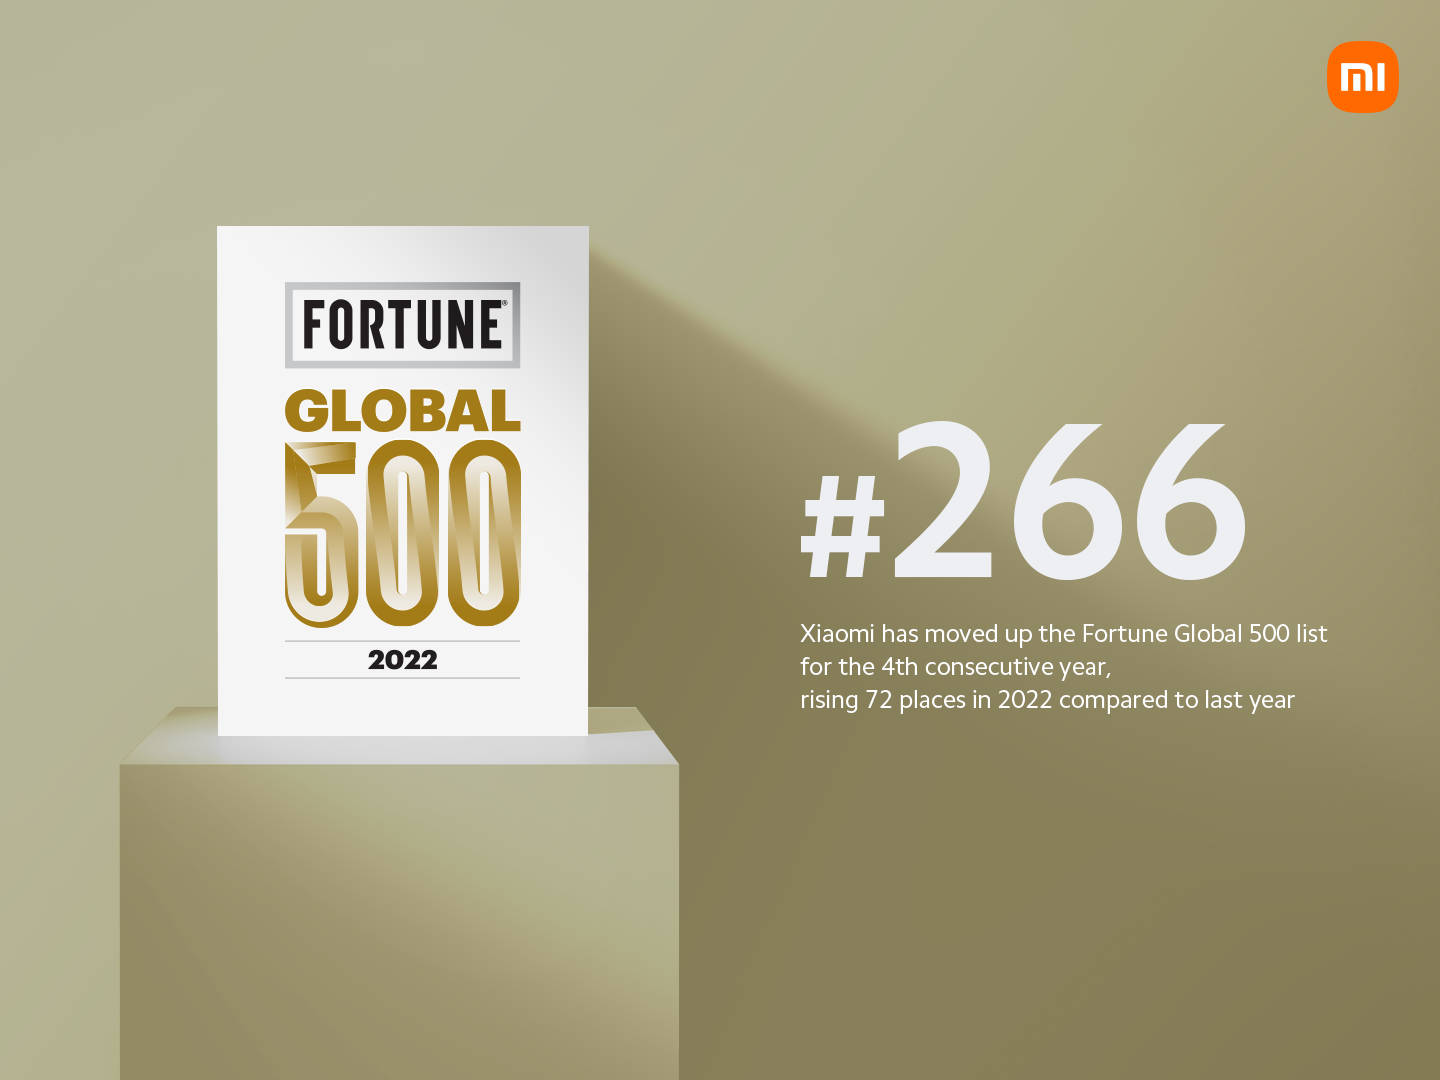 เสียวหมี่ขยับอันดับสูงขึ้นอีกครั้งในการจัดอันดับของ Fortune Global 500 ด้วยกลยุทธ์ 'สมาร์ทโฟน × AIoT'